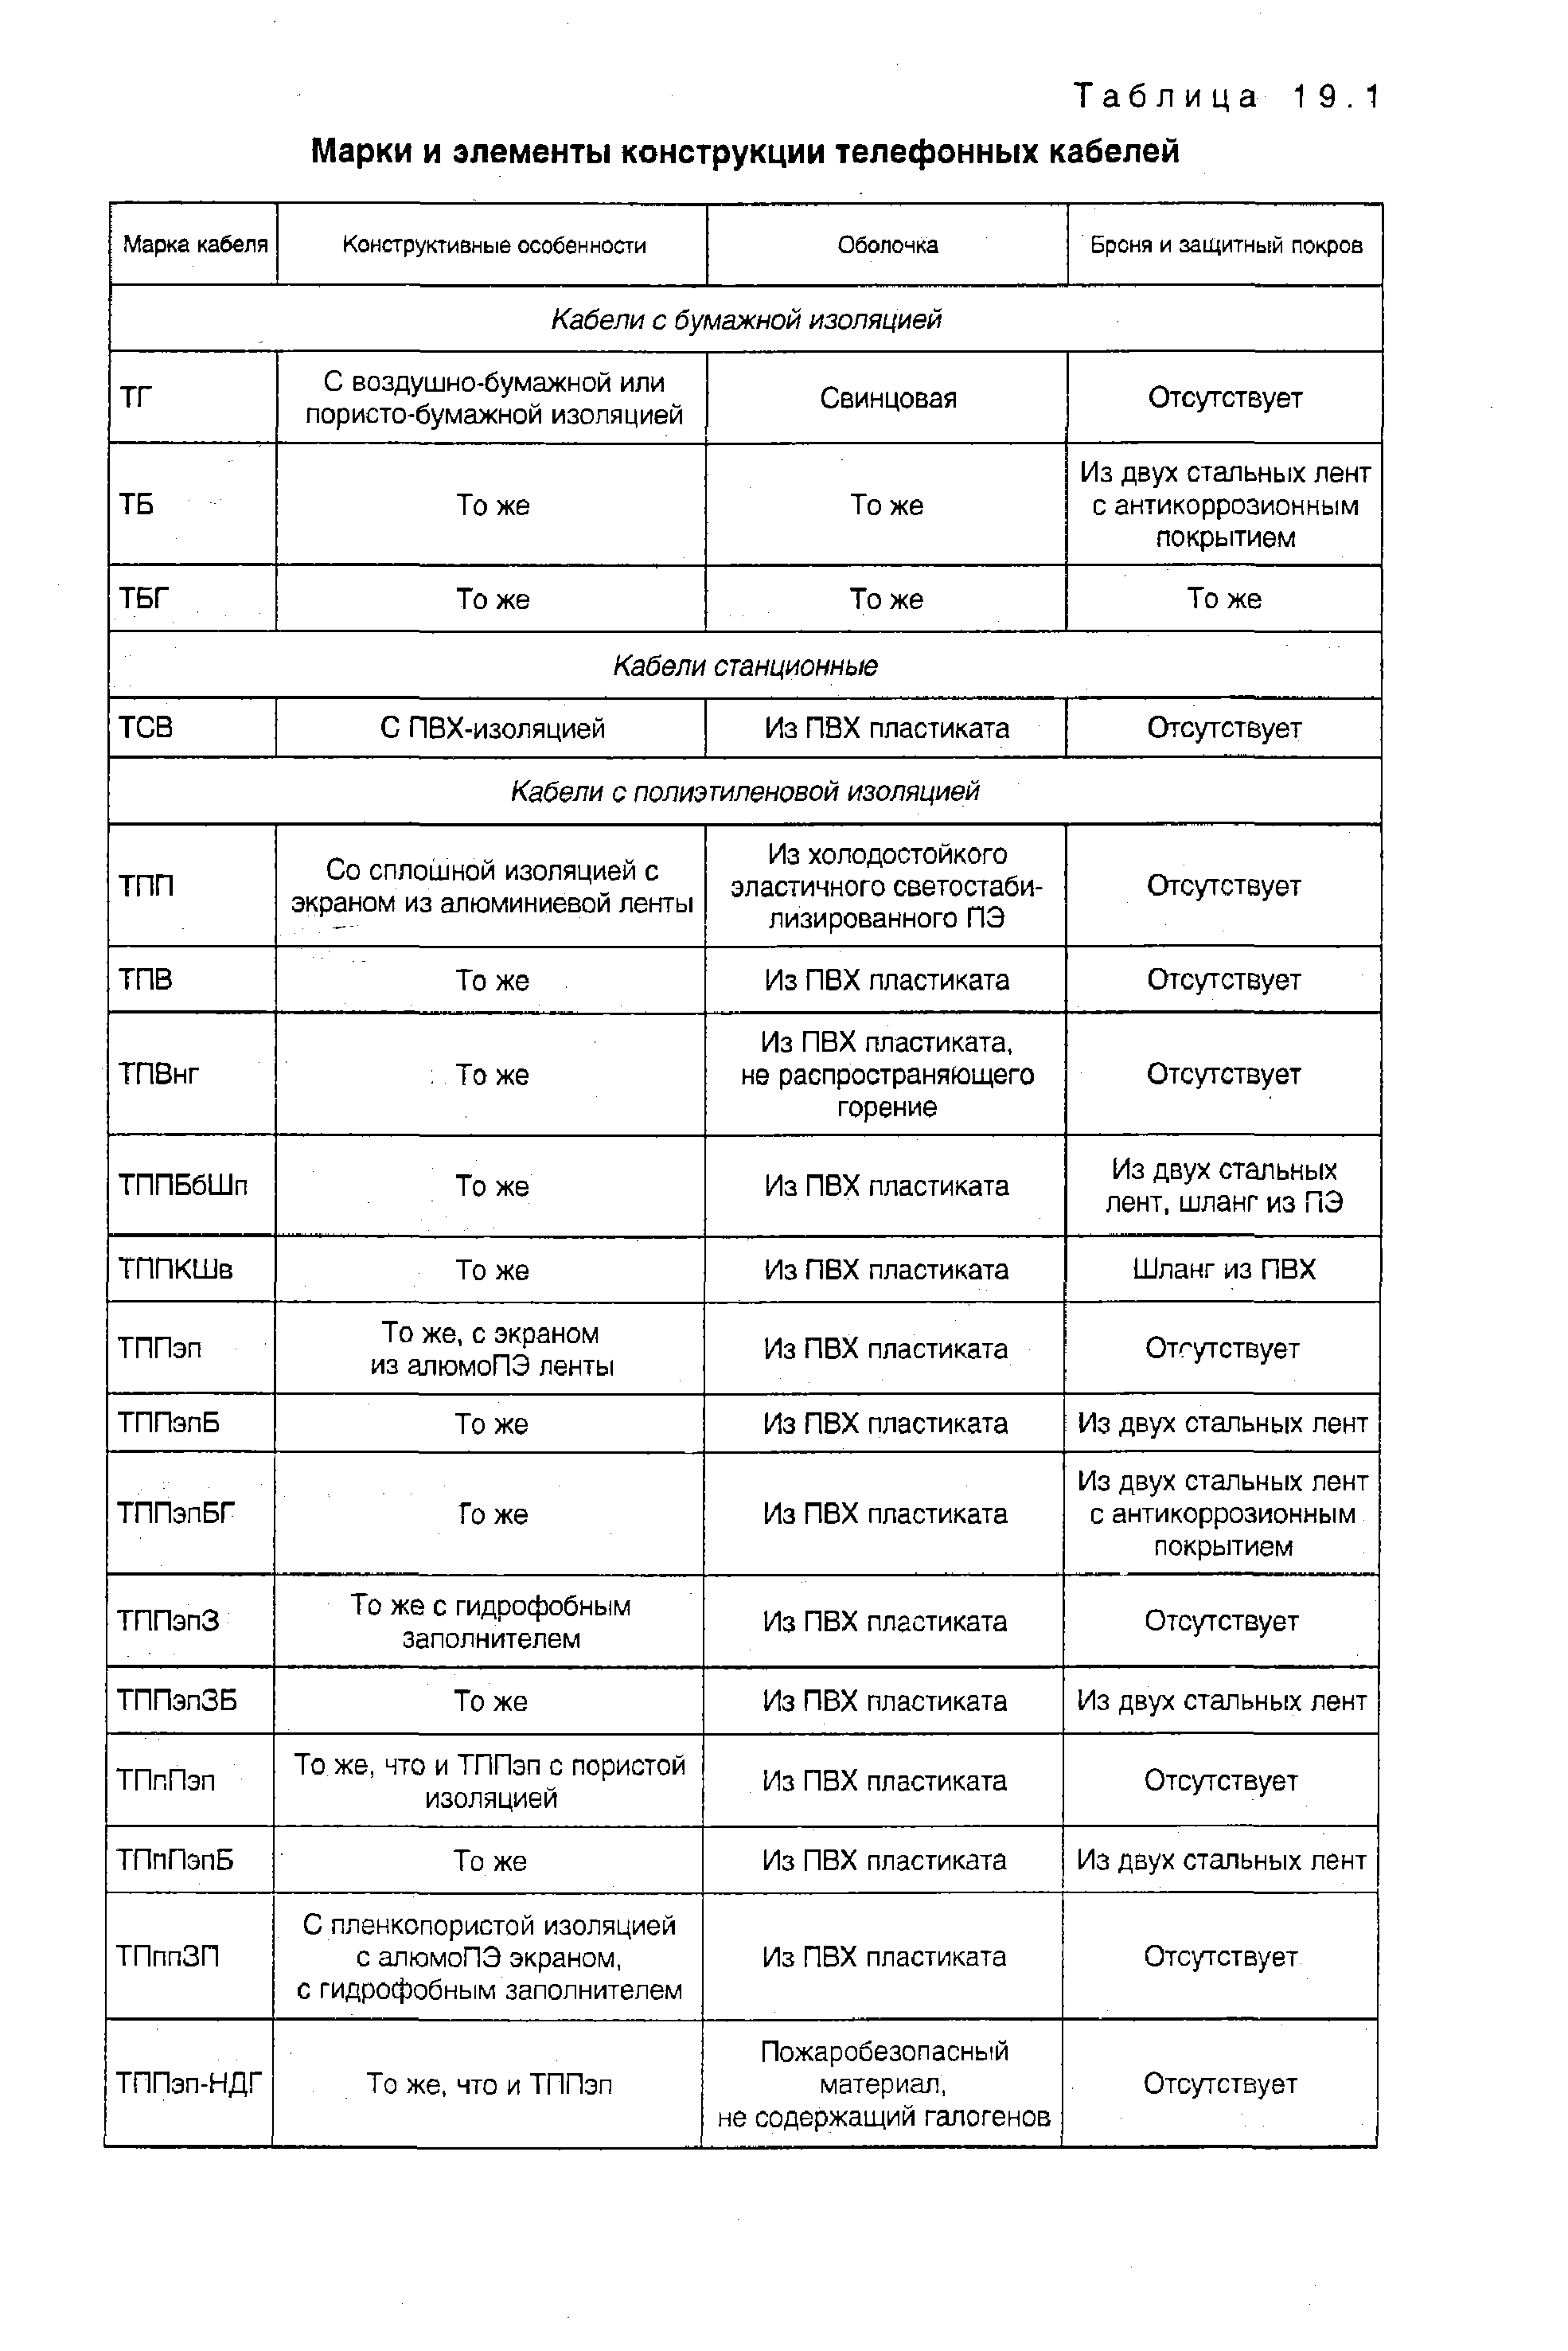 Таблица 19.1 Марки и <a href="/info/28902">элементы конструкции</a> телефонных кабелей
